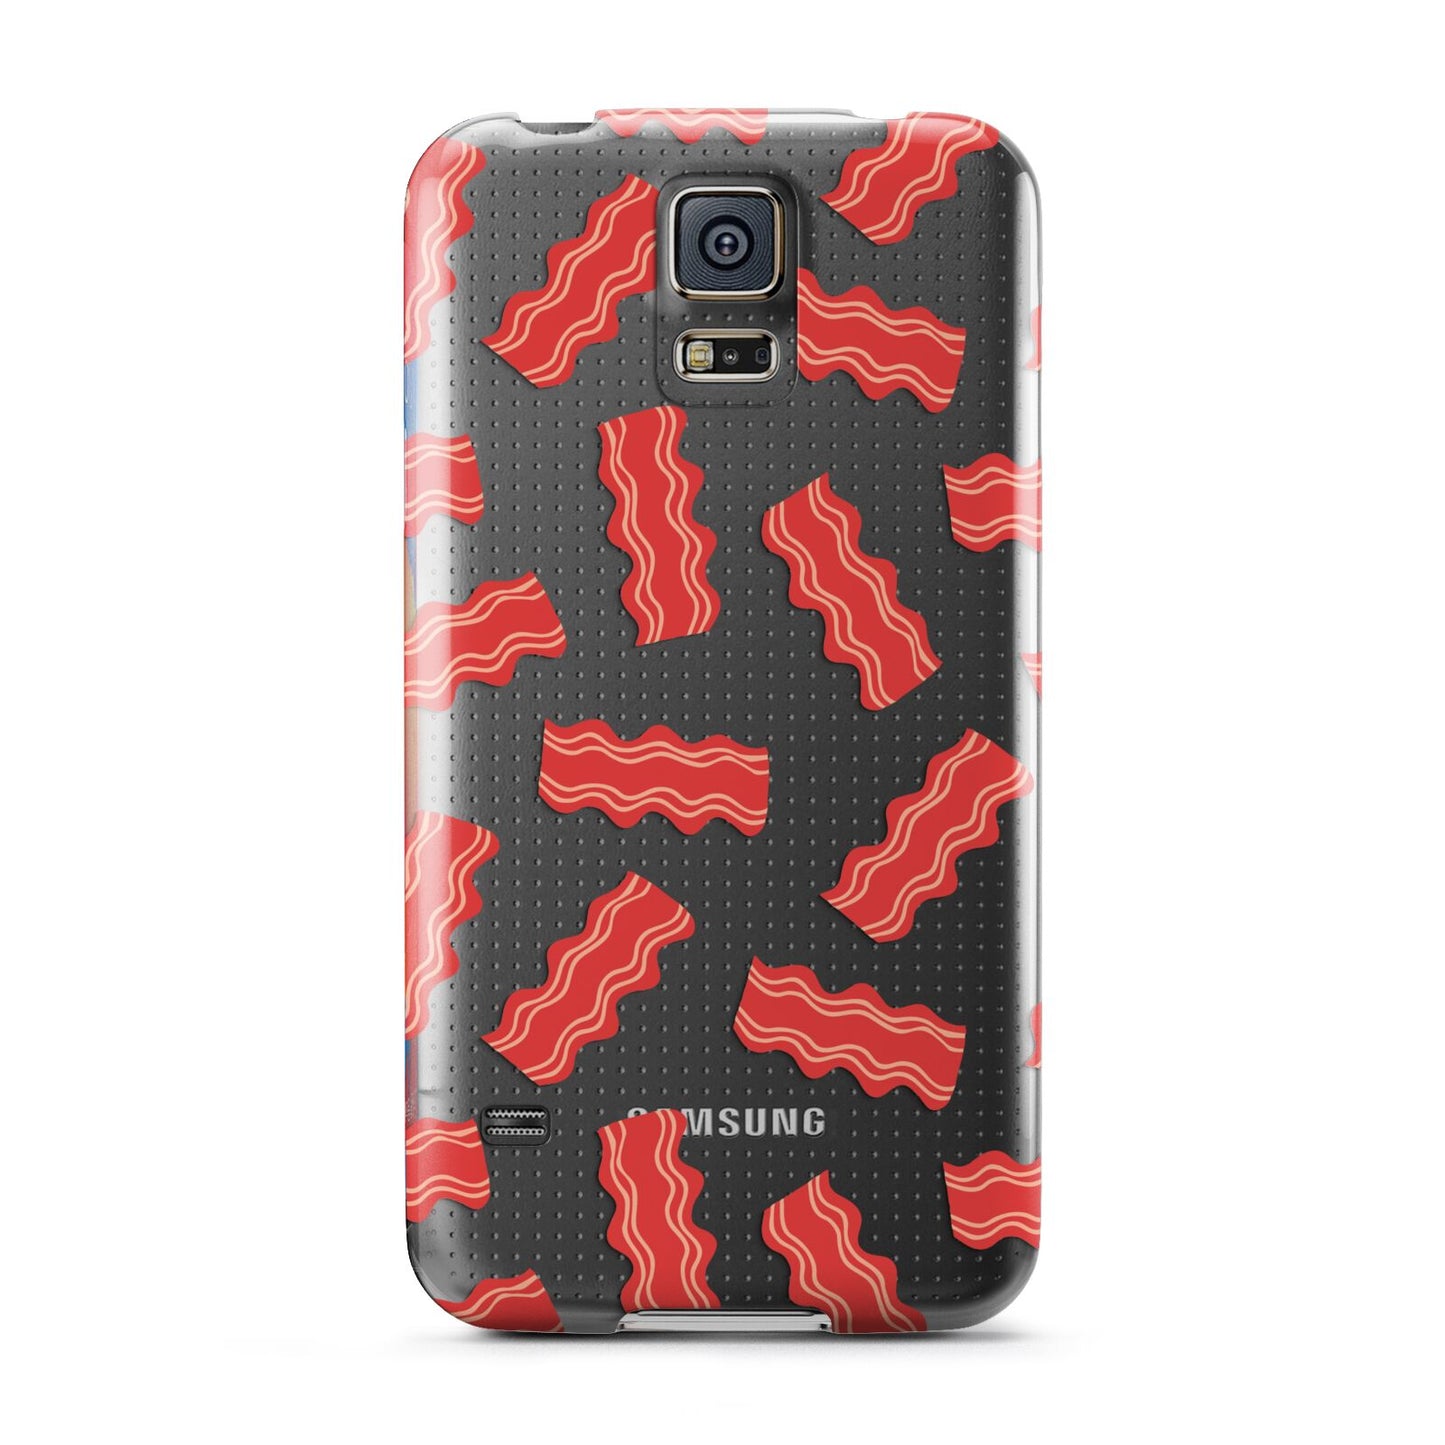 Bacon Samsung Galaxy S5 Case